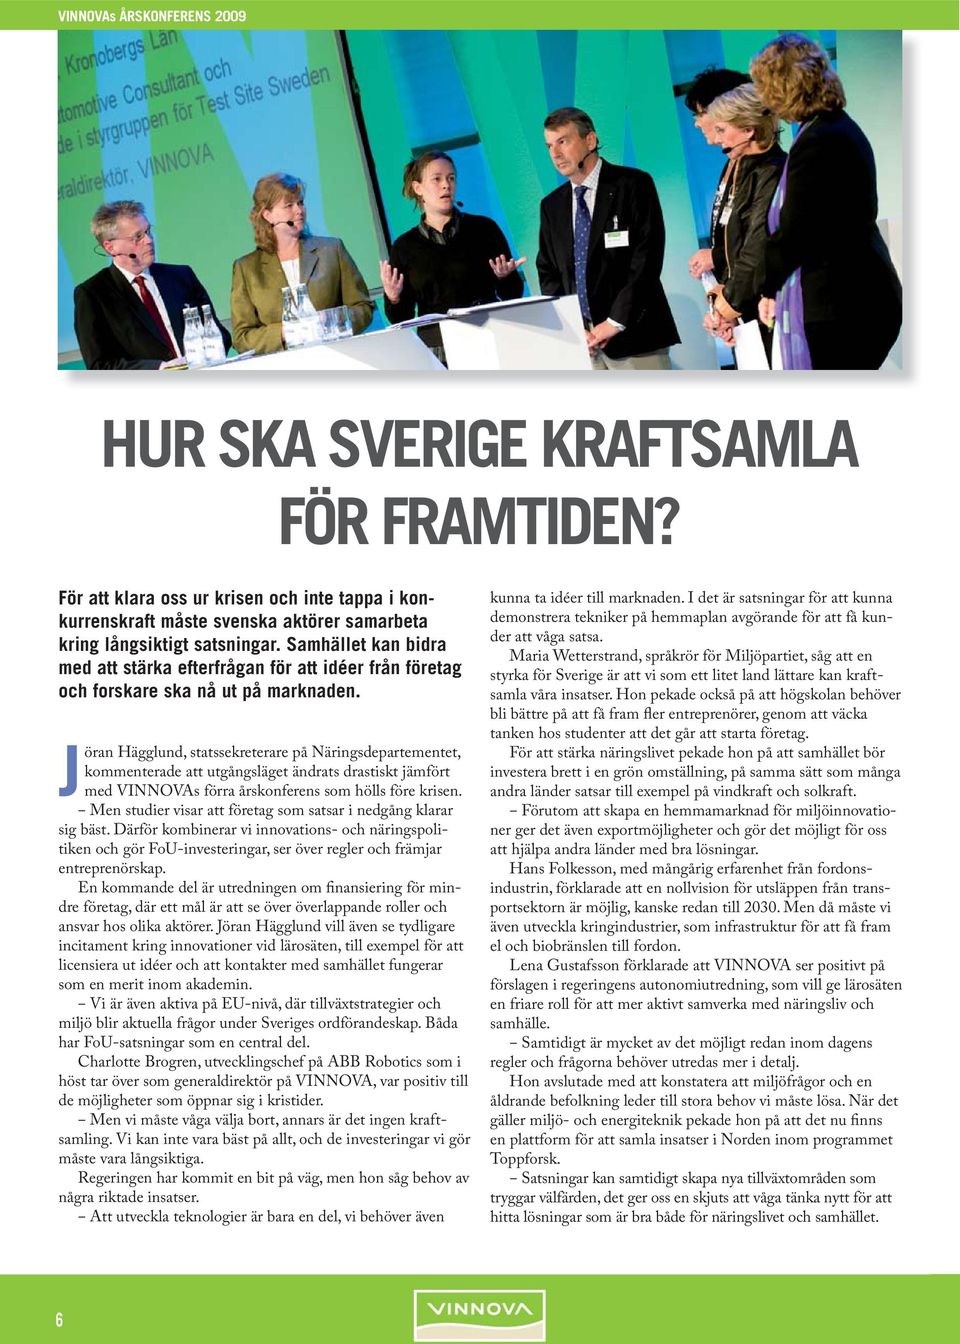 Jöran Hägglund, statssekreterare på Näringsdepartementet, kommenterade att utgångsläget ändrats drastiskt jämfört med VINNOVAs förra årskonferens som hölls före krisen.